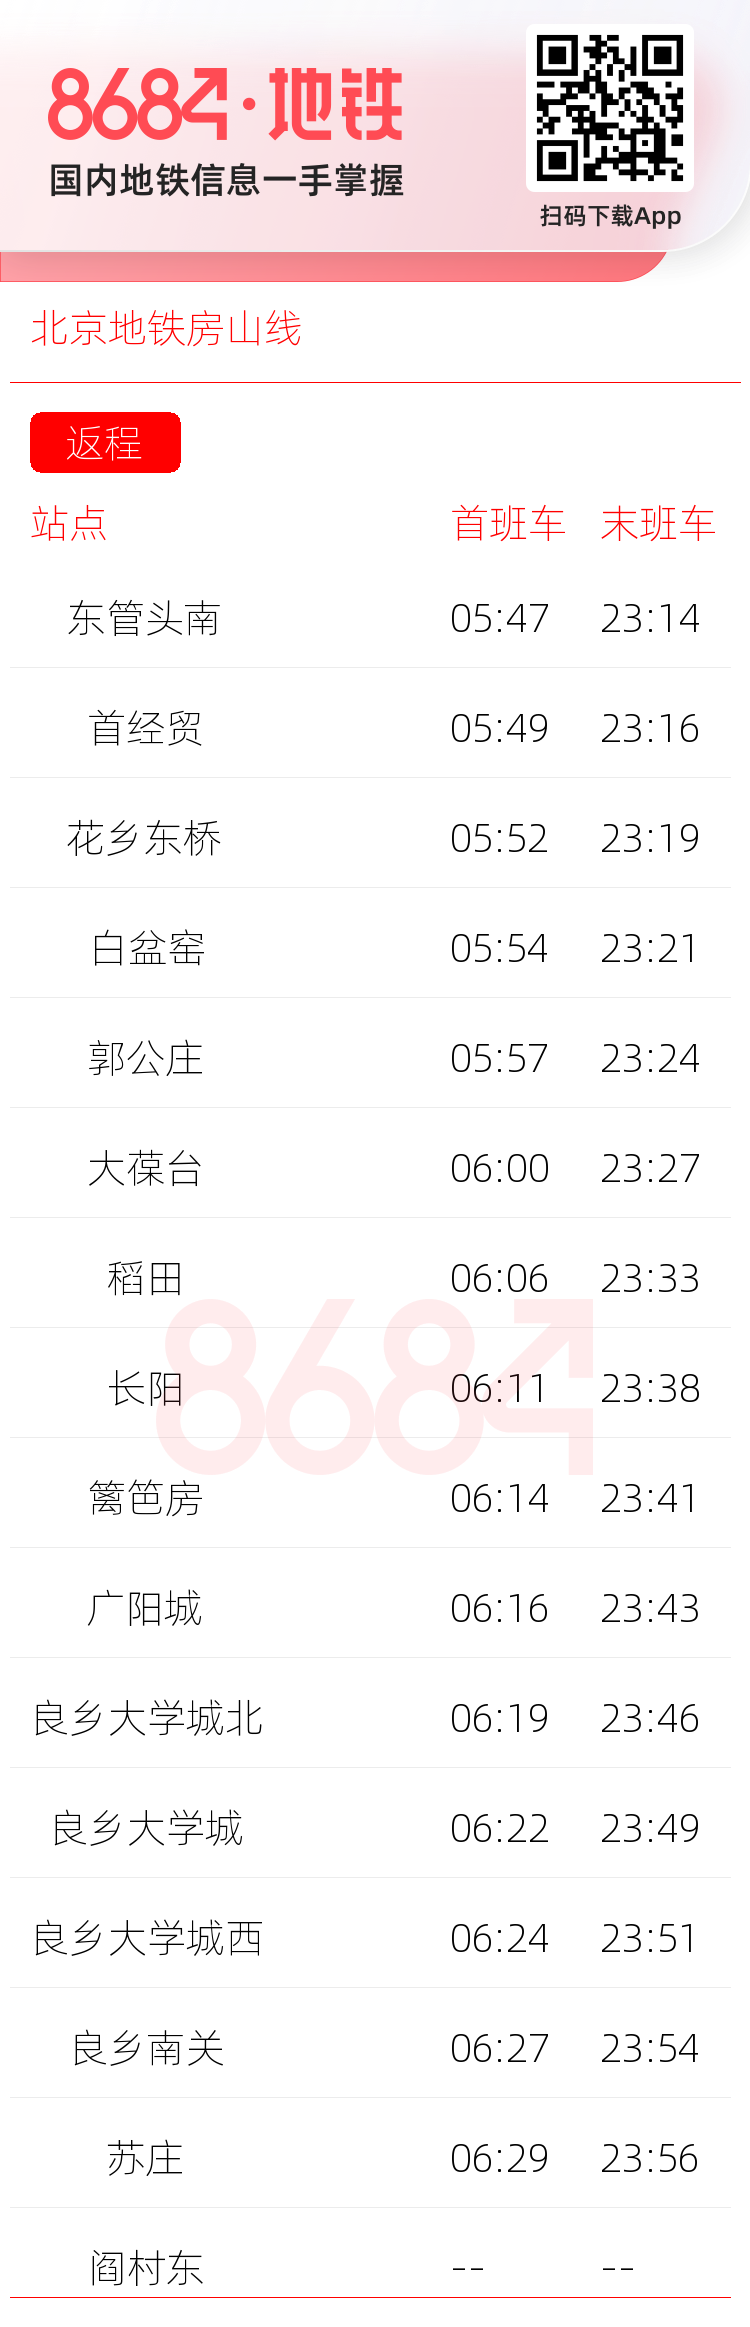 北京地铁房山线运营时间表